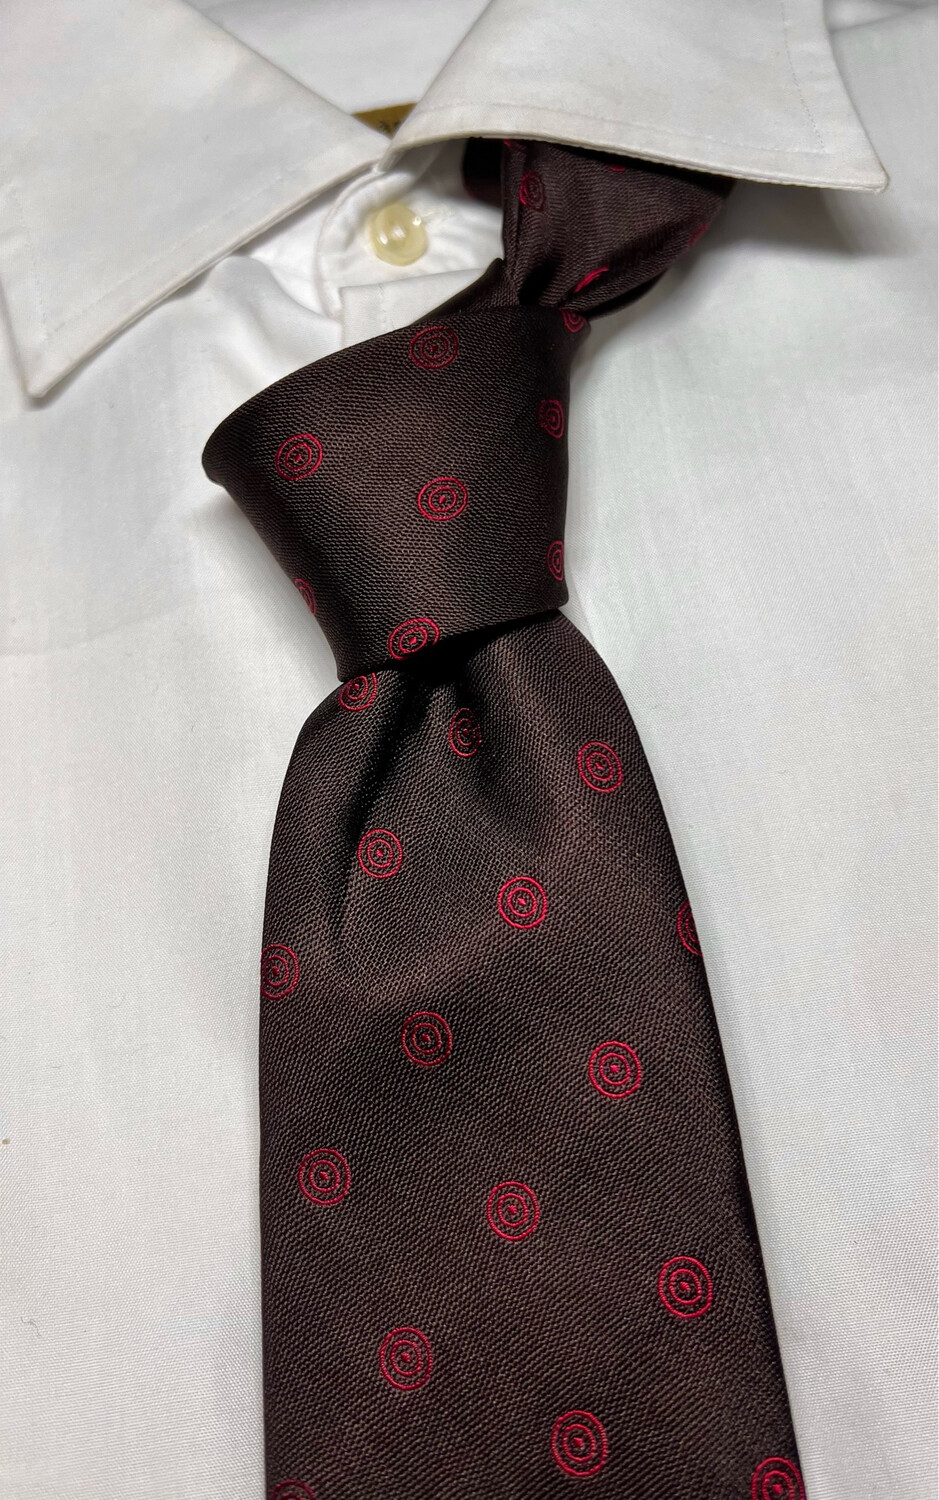 Cravatta Basile seta 100% marrone 8 cm silk necktie corbata krawatte